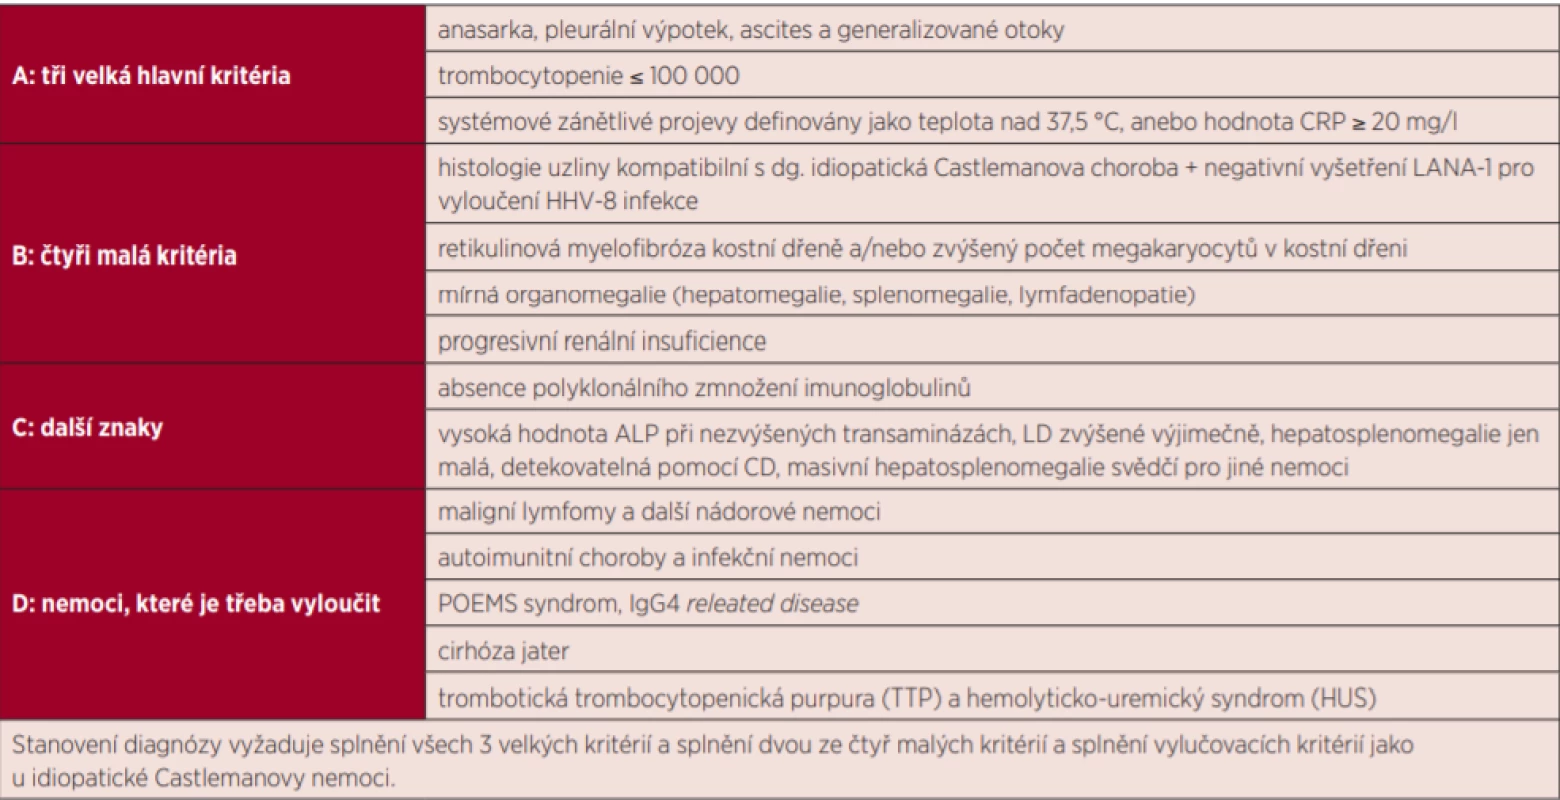  Navržená kritéria pro TAFRO syndrom při idiopatické Castlemanově nemoci [16]